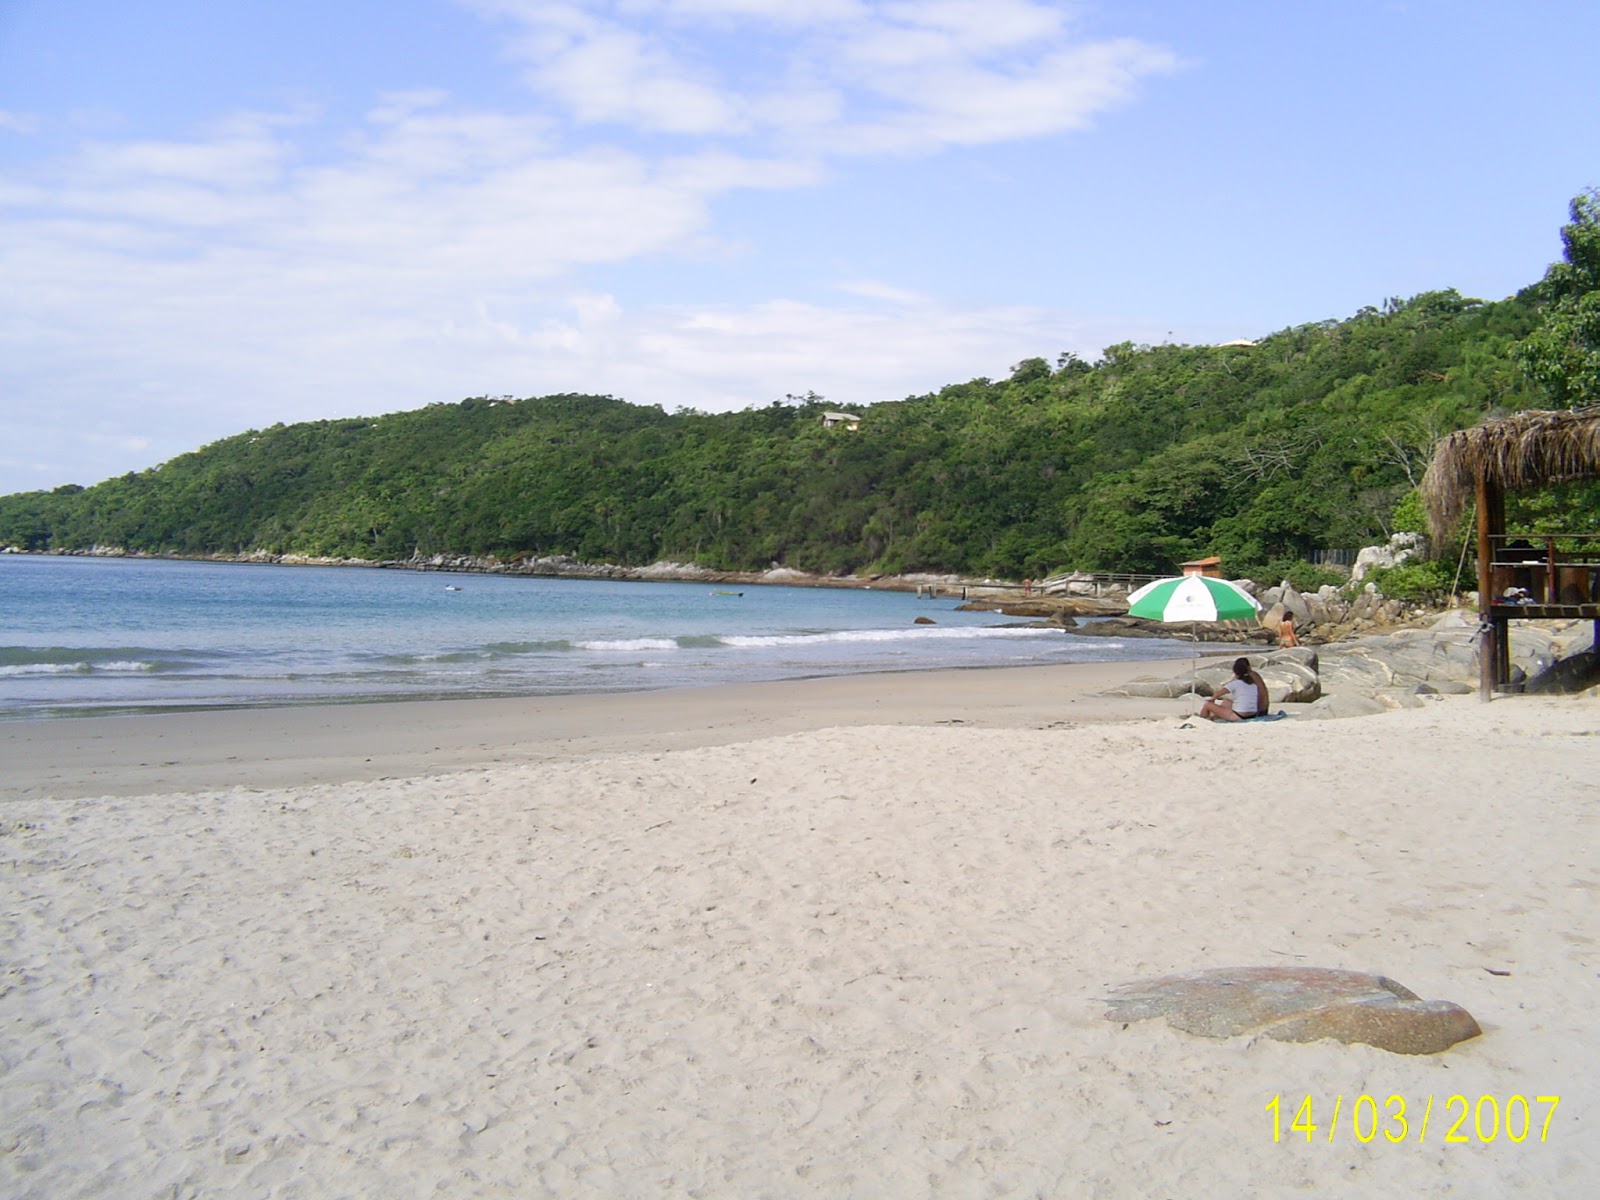 Foto di Praia do Estaleiro zona selvaggia